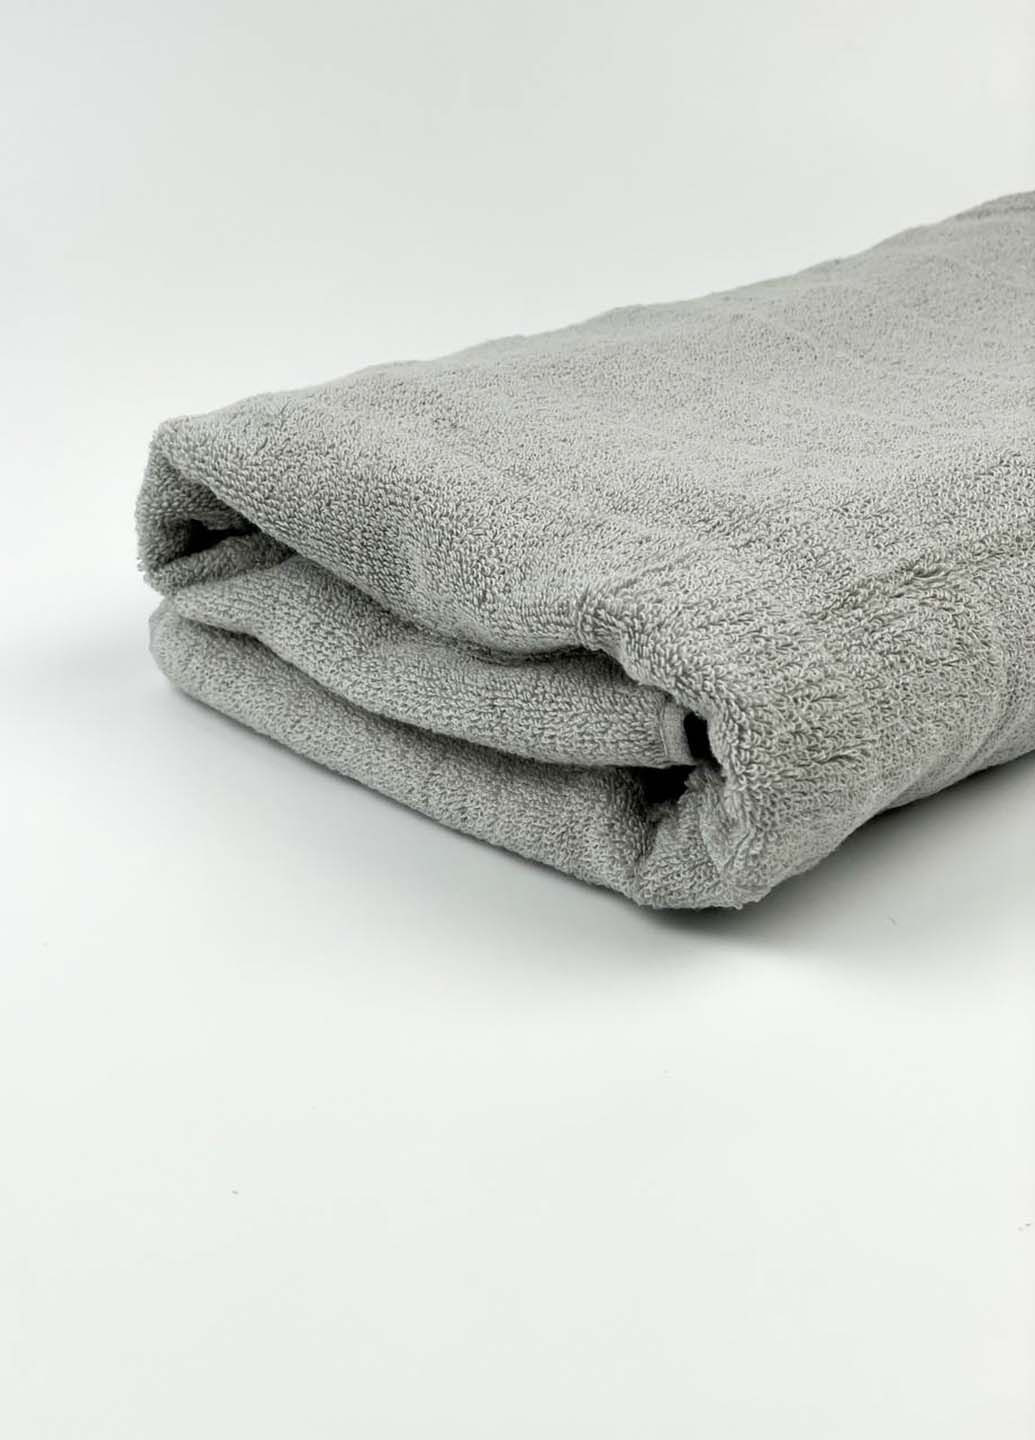 Homedec полотенце банное махровое 140х70 см полоска светло-серый производство - Турция